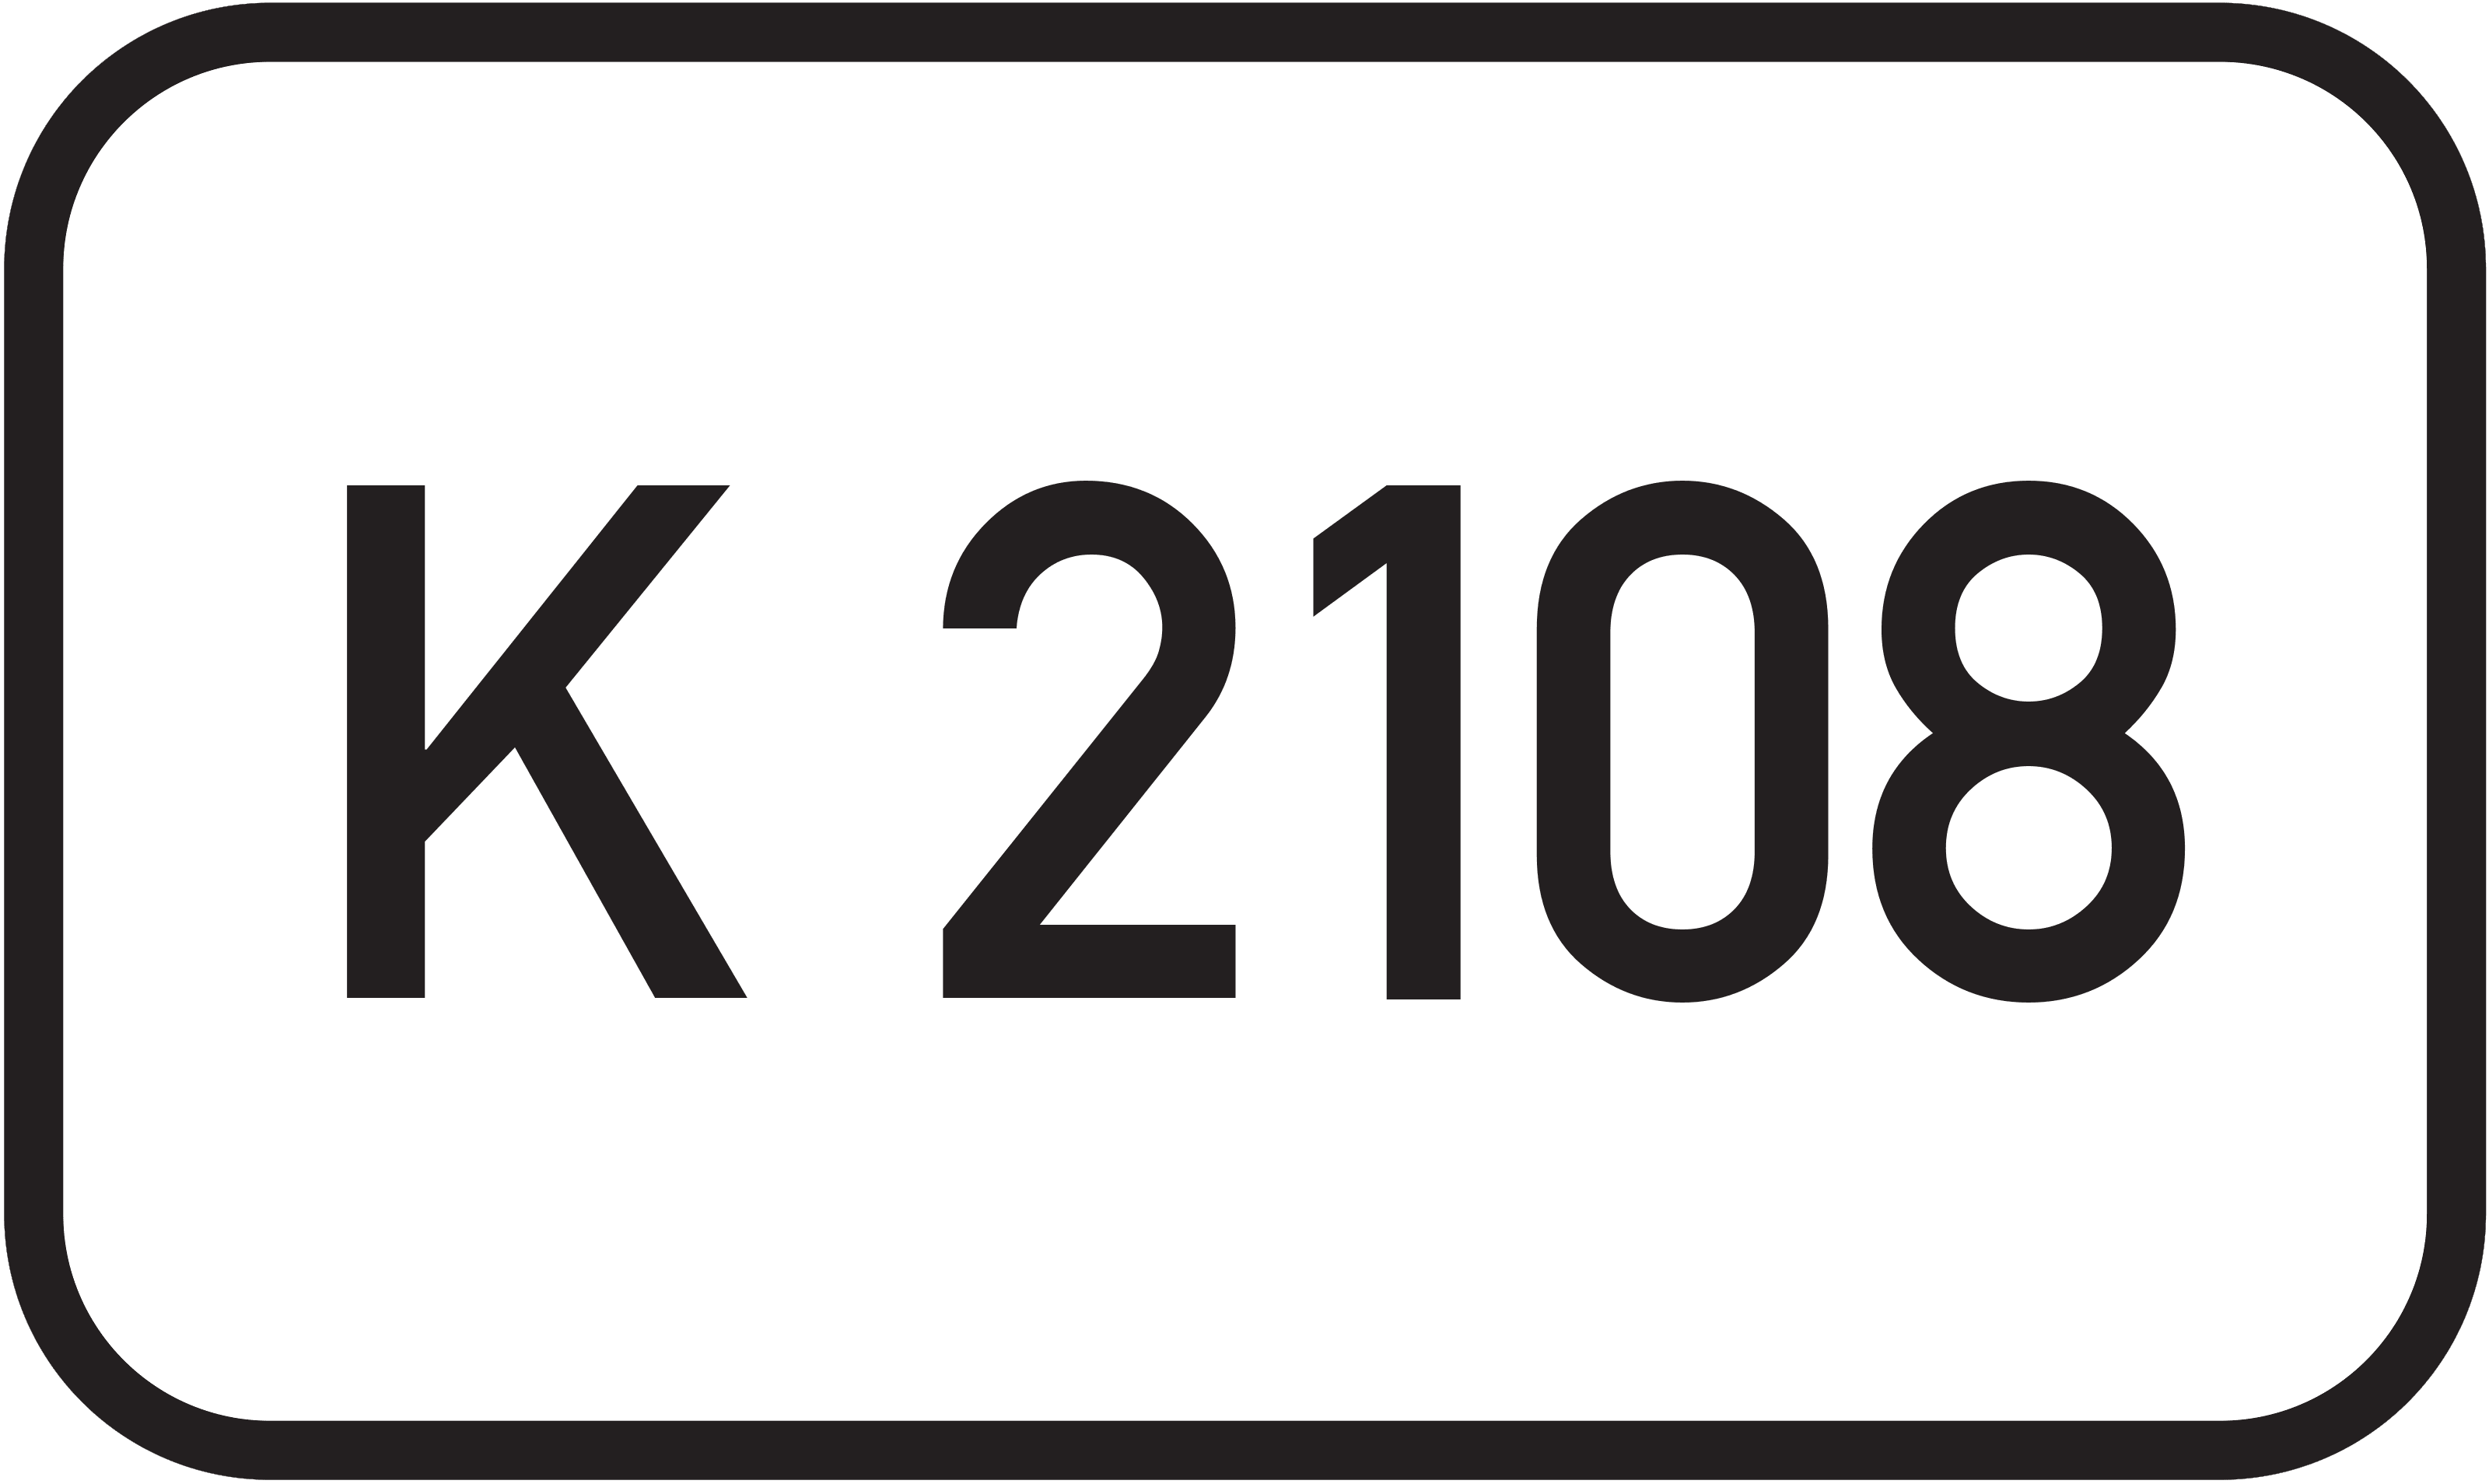 Kreisstraße K 2108